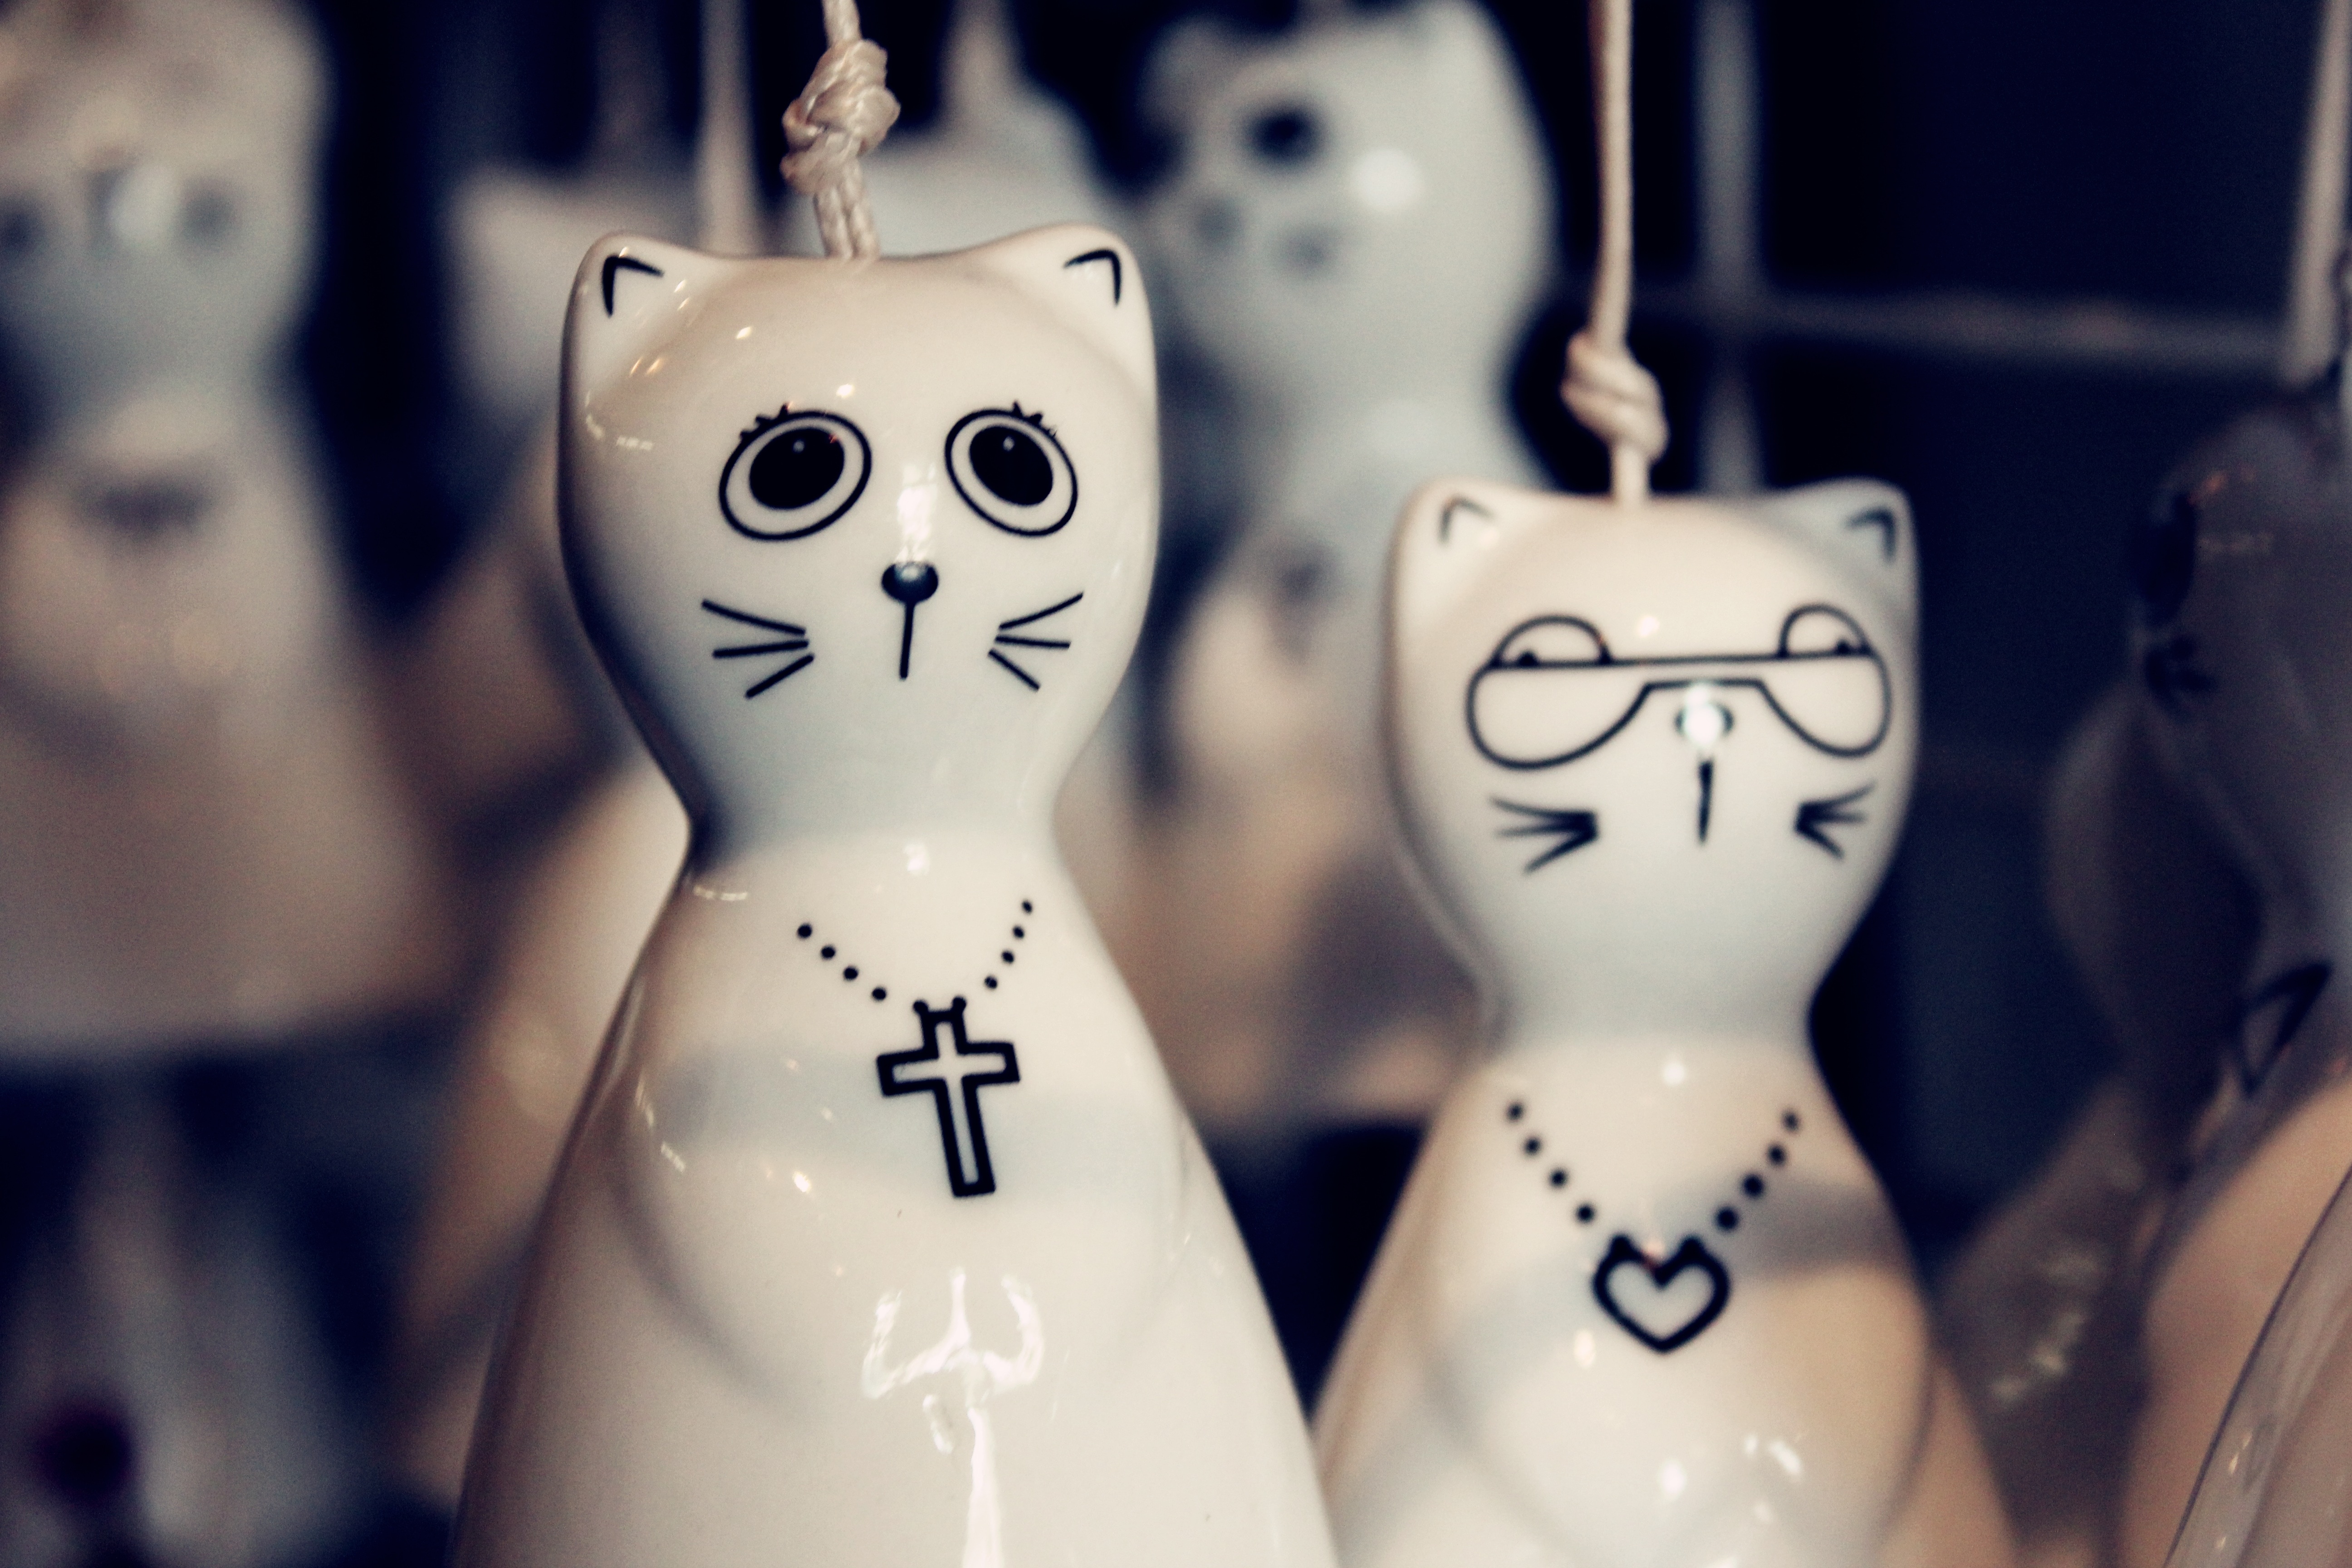 2 white ceramic cat figurines